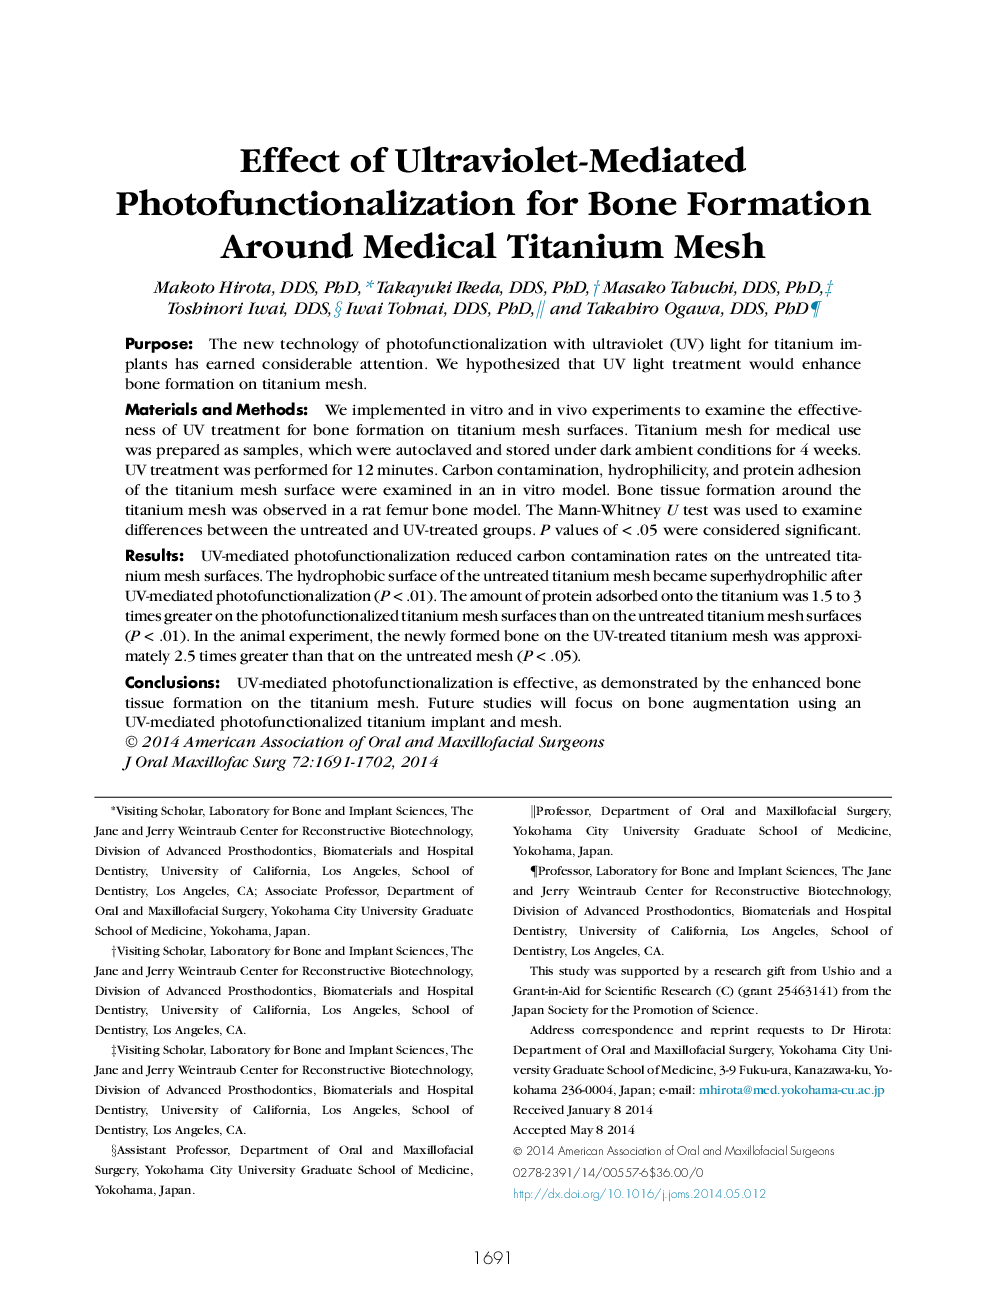 اثر فتوکاتیزاسیون عکس فشرده شده با استفاده از اشعه ماوراء بنفش برای تشکیل استخوان در اطراف تیتانیوم پزشکی 